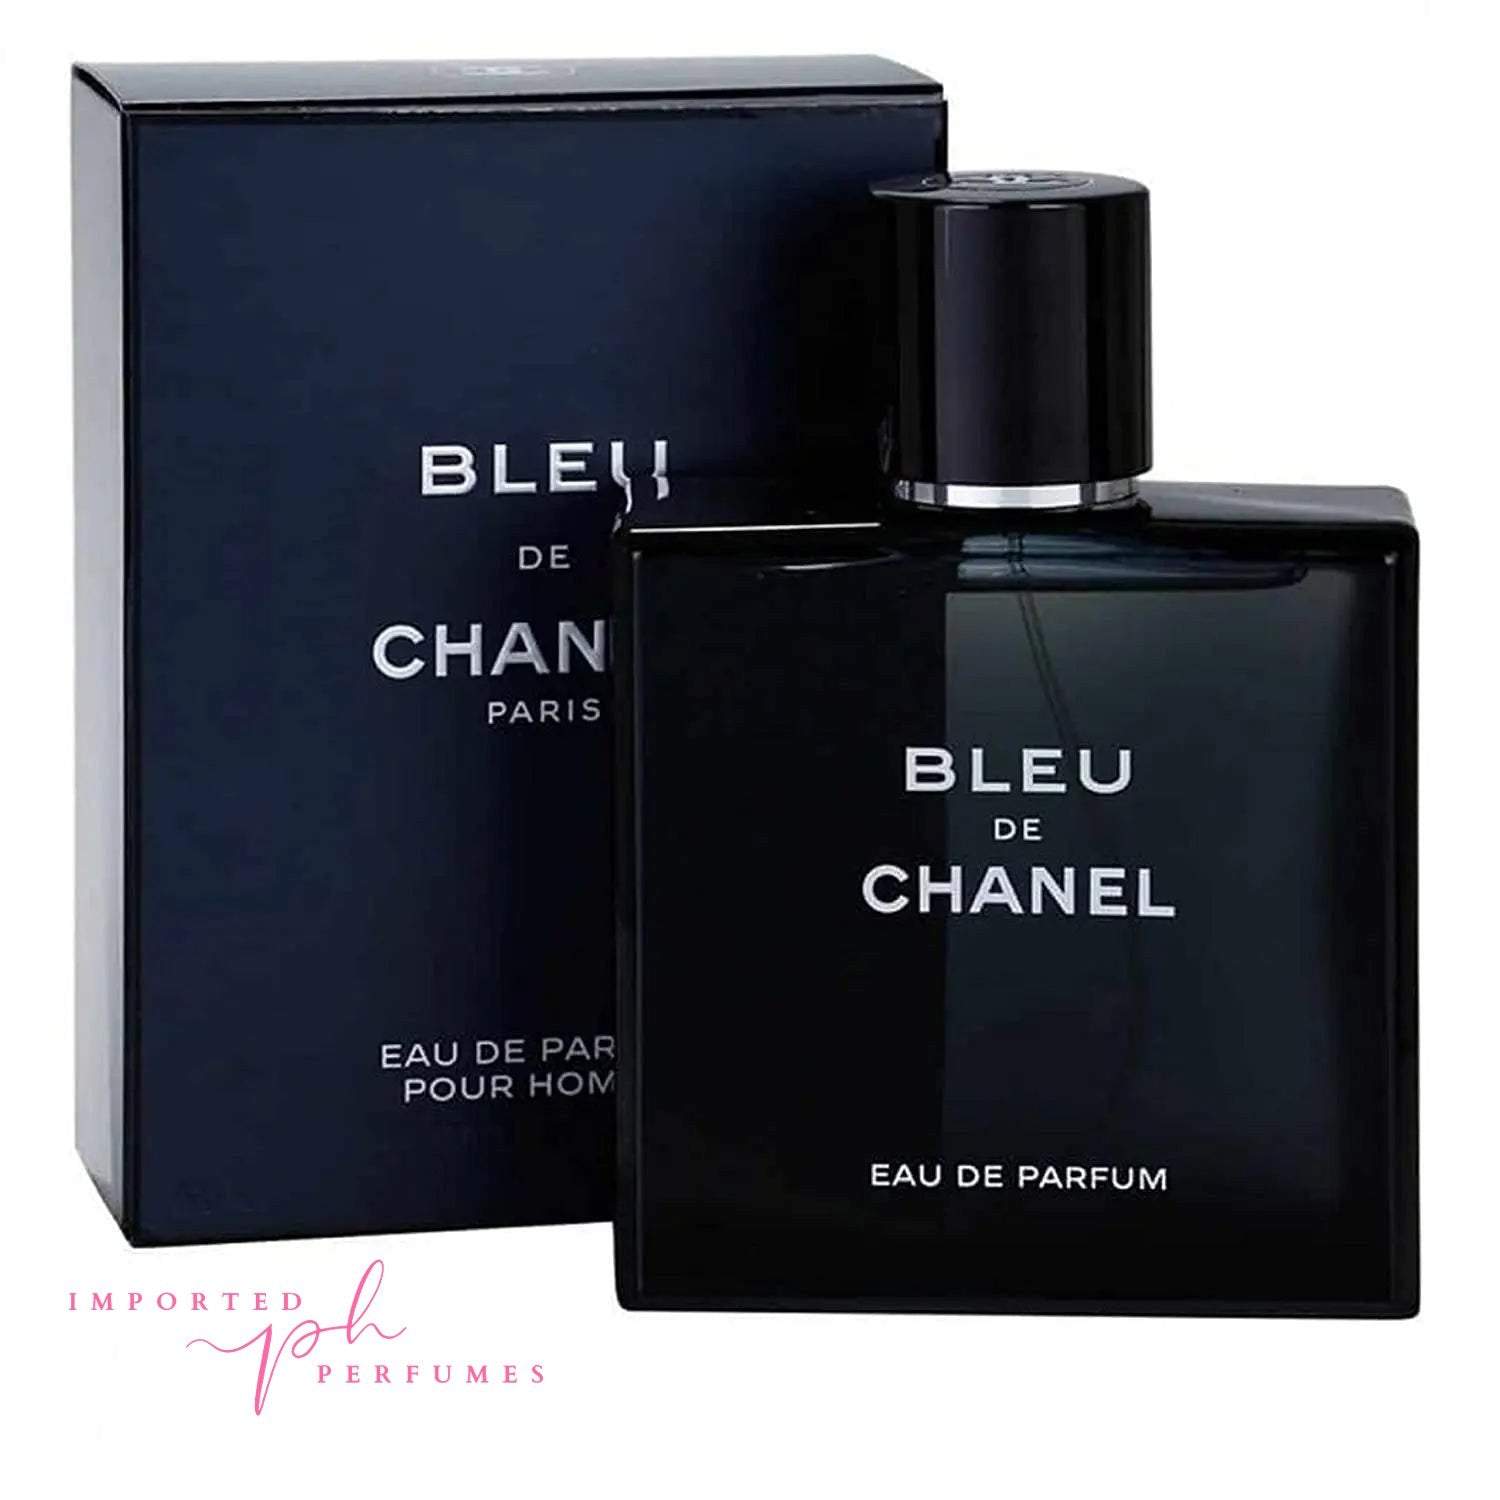 Bleu de Chanel's new Parfum cements the range as a classic